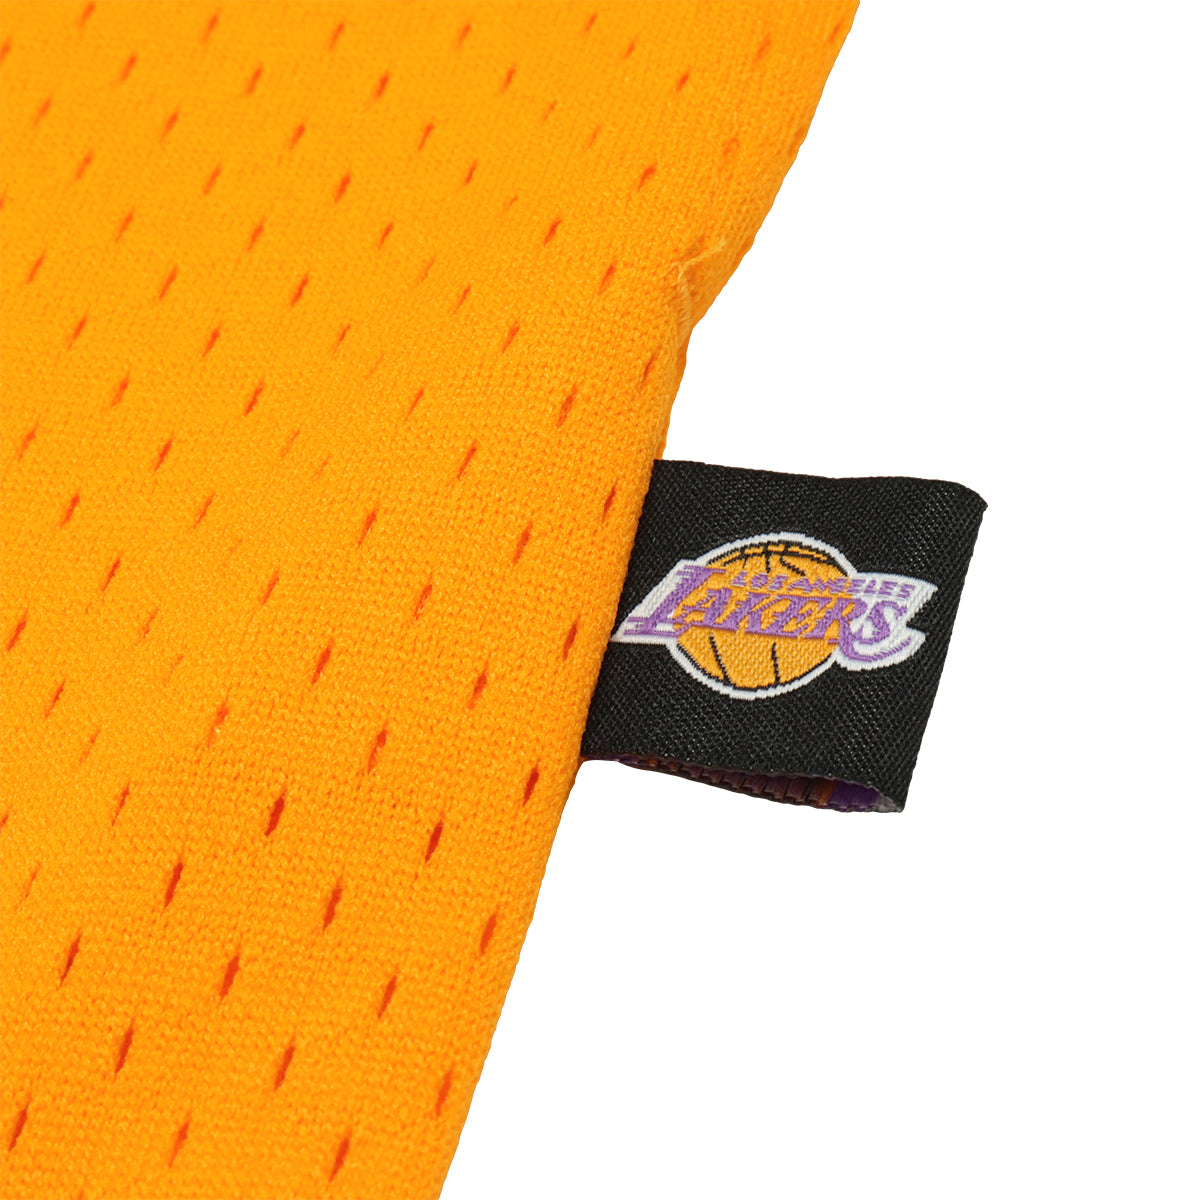 Takashi Murakami × LA Lakers × ComplexCon Basketball Shorts GOLD Shorts